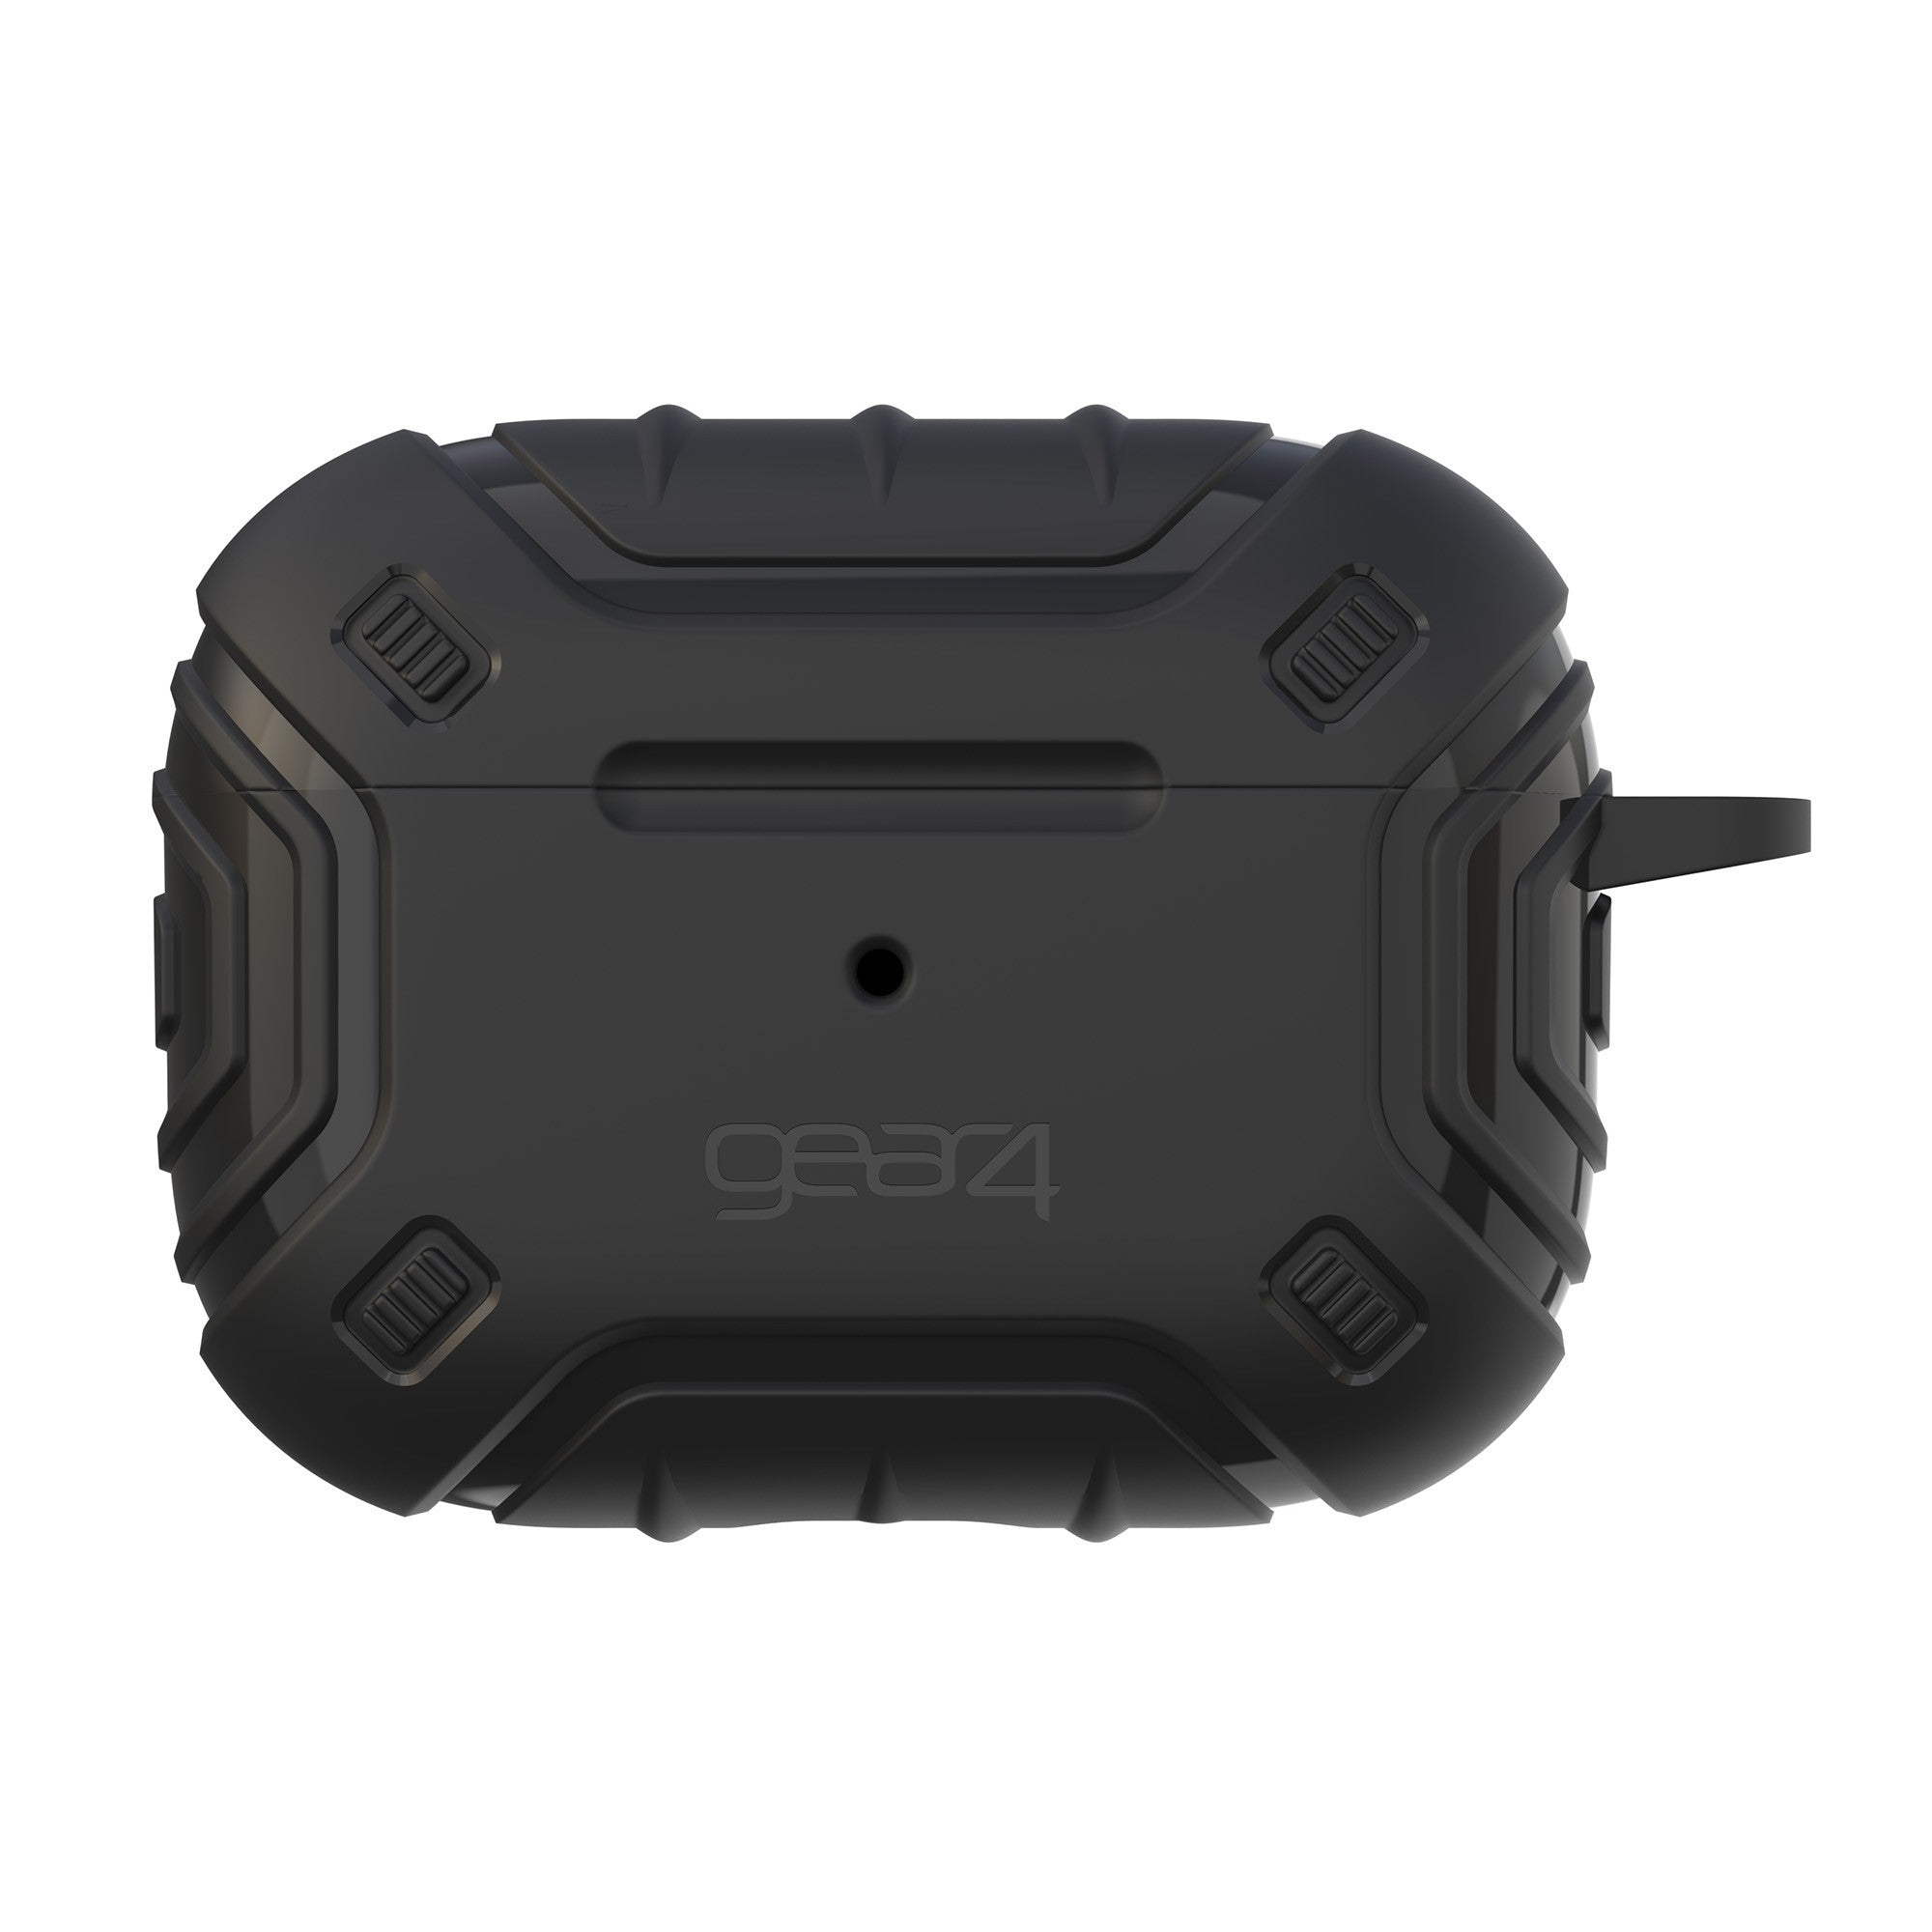 Airpods Pro 2 Gear4 Apollo Snap Case - Black - 15-10831